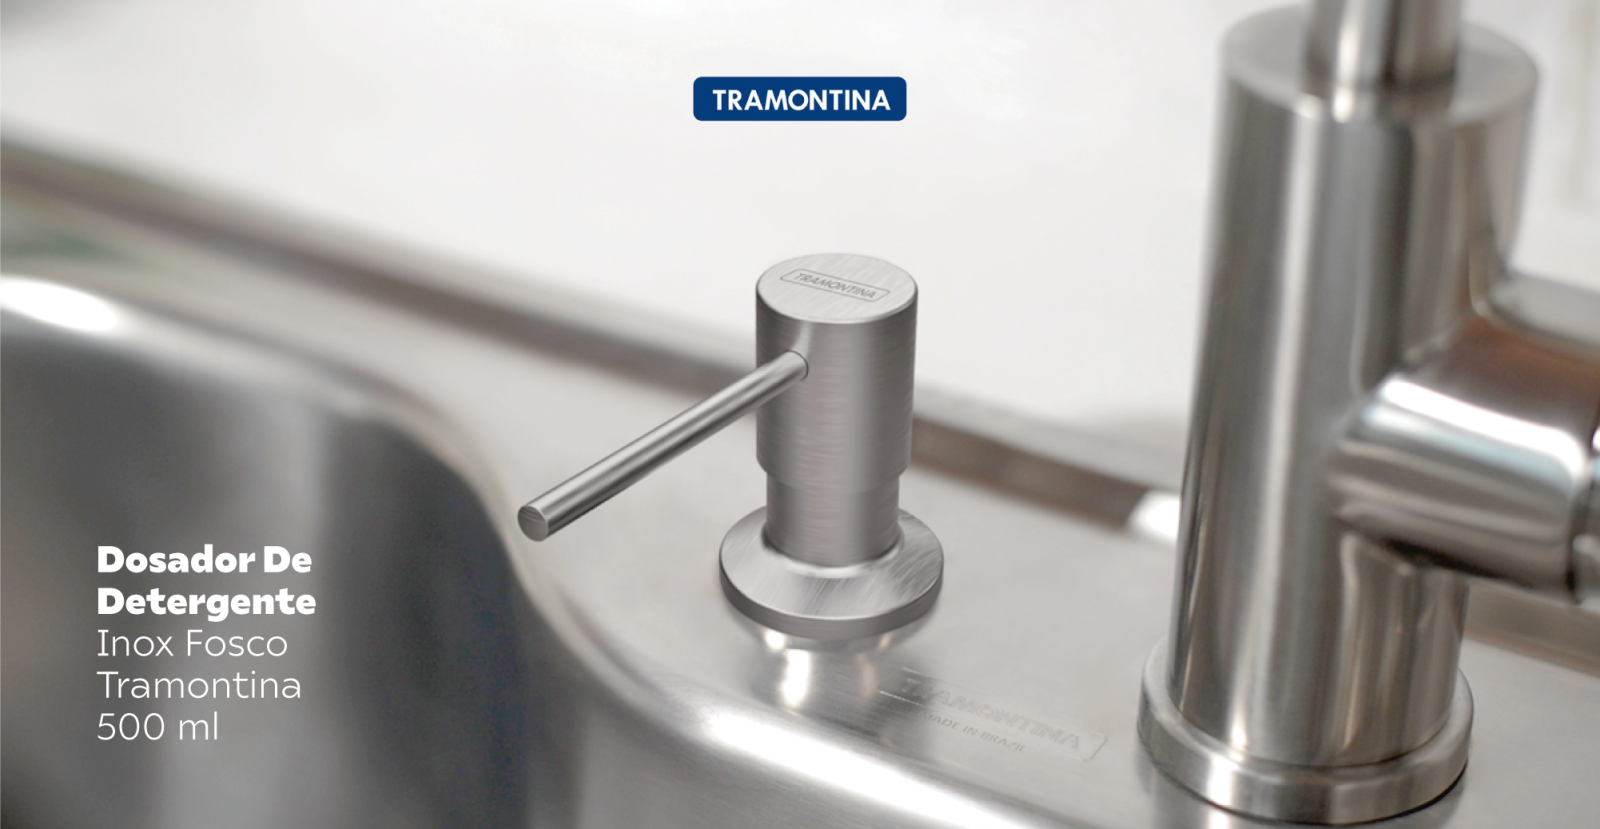 Dosador De Detergente Aço Inox Fosco - Tramontina - 500 ml